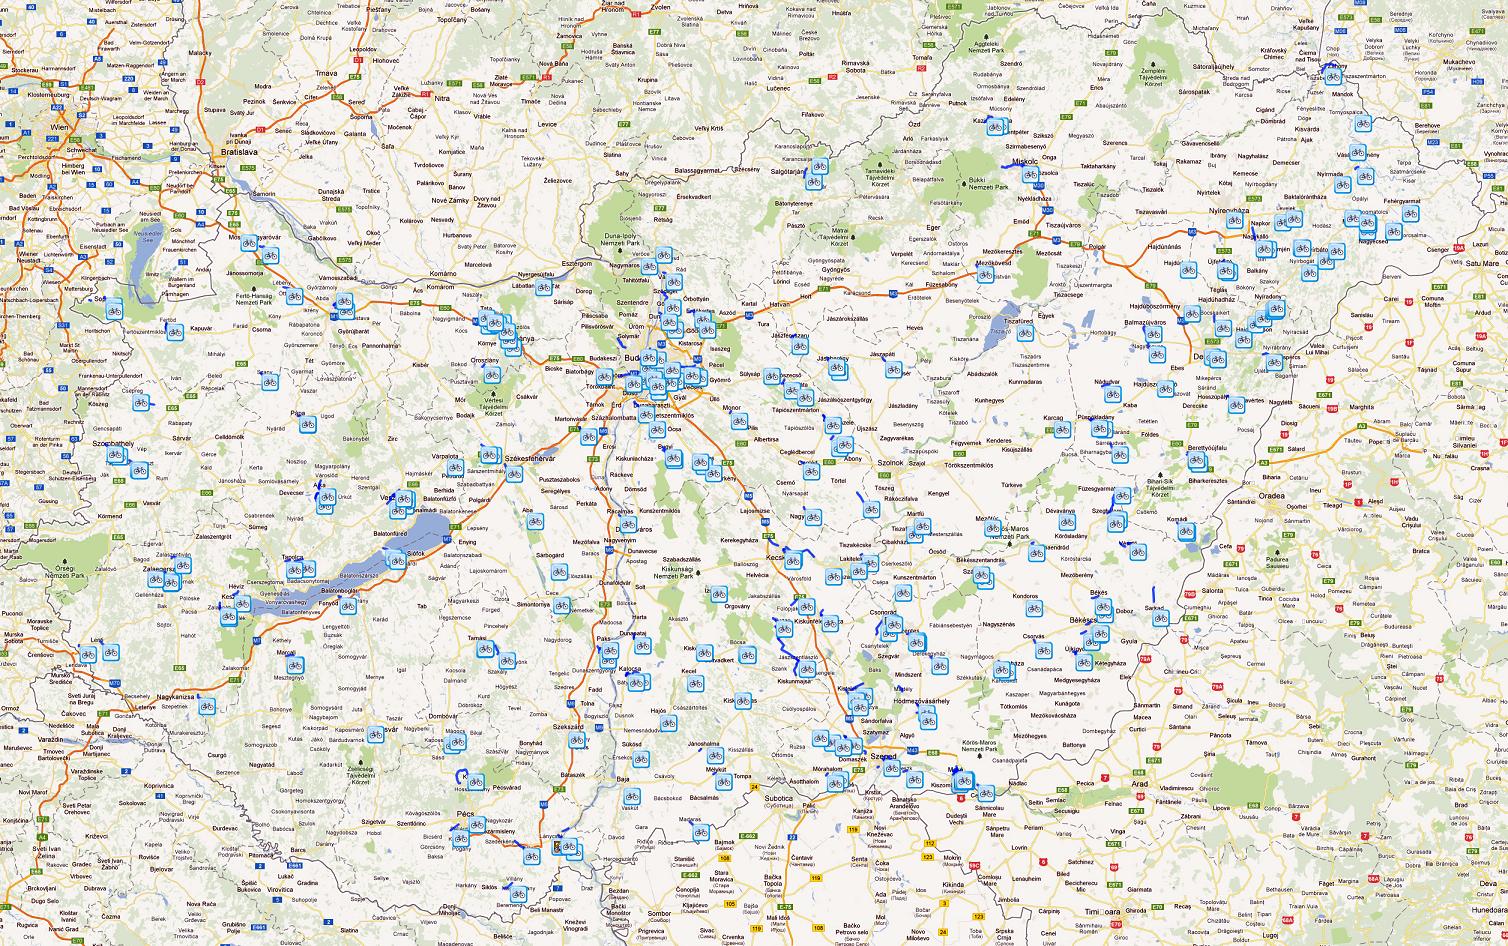 magyarország kerékpárút hálózat térkép Magyarország kerékpáros térképe   Biciklopédia magyarország kerékpárút hálózat térkép